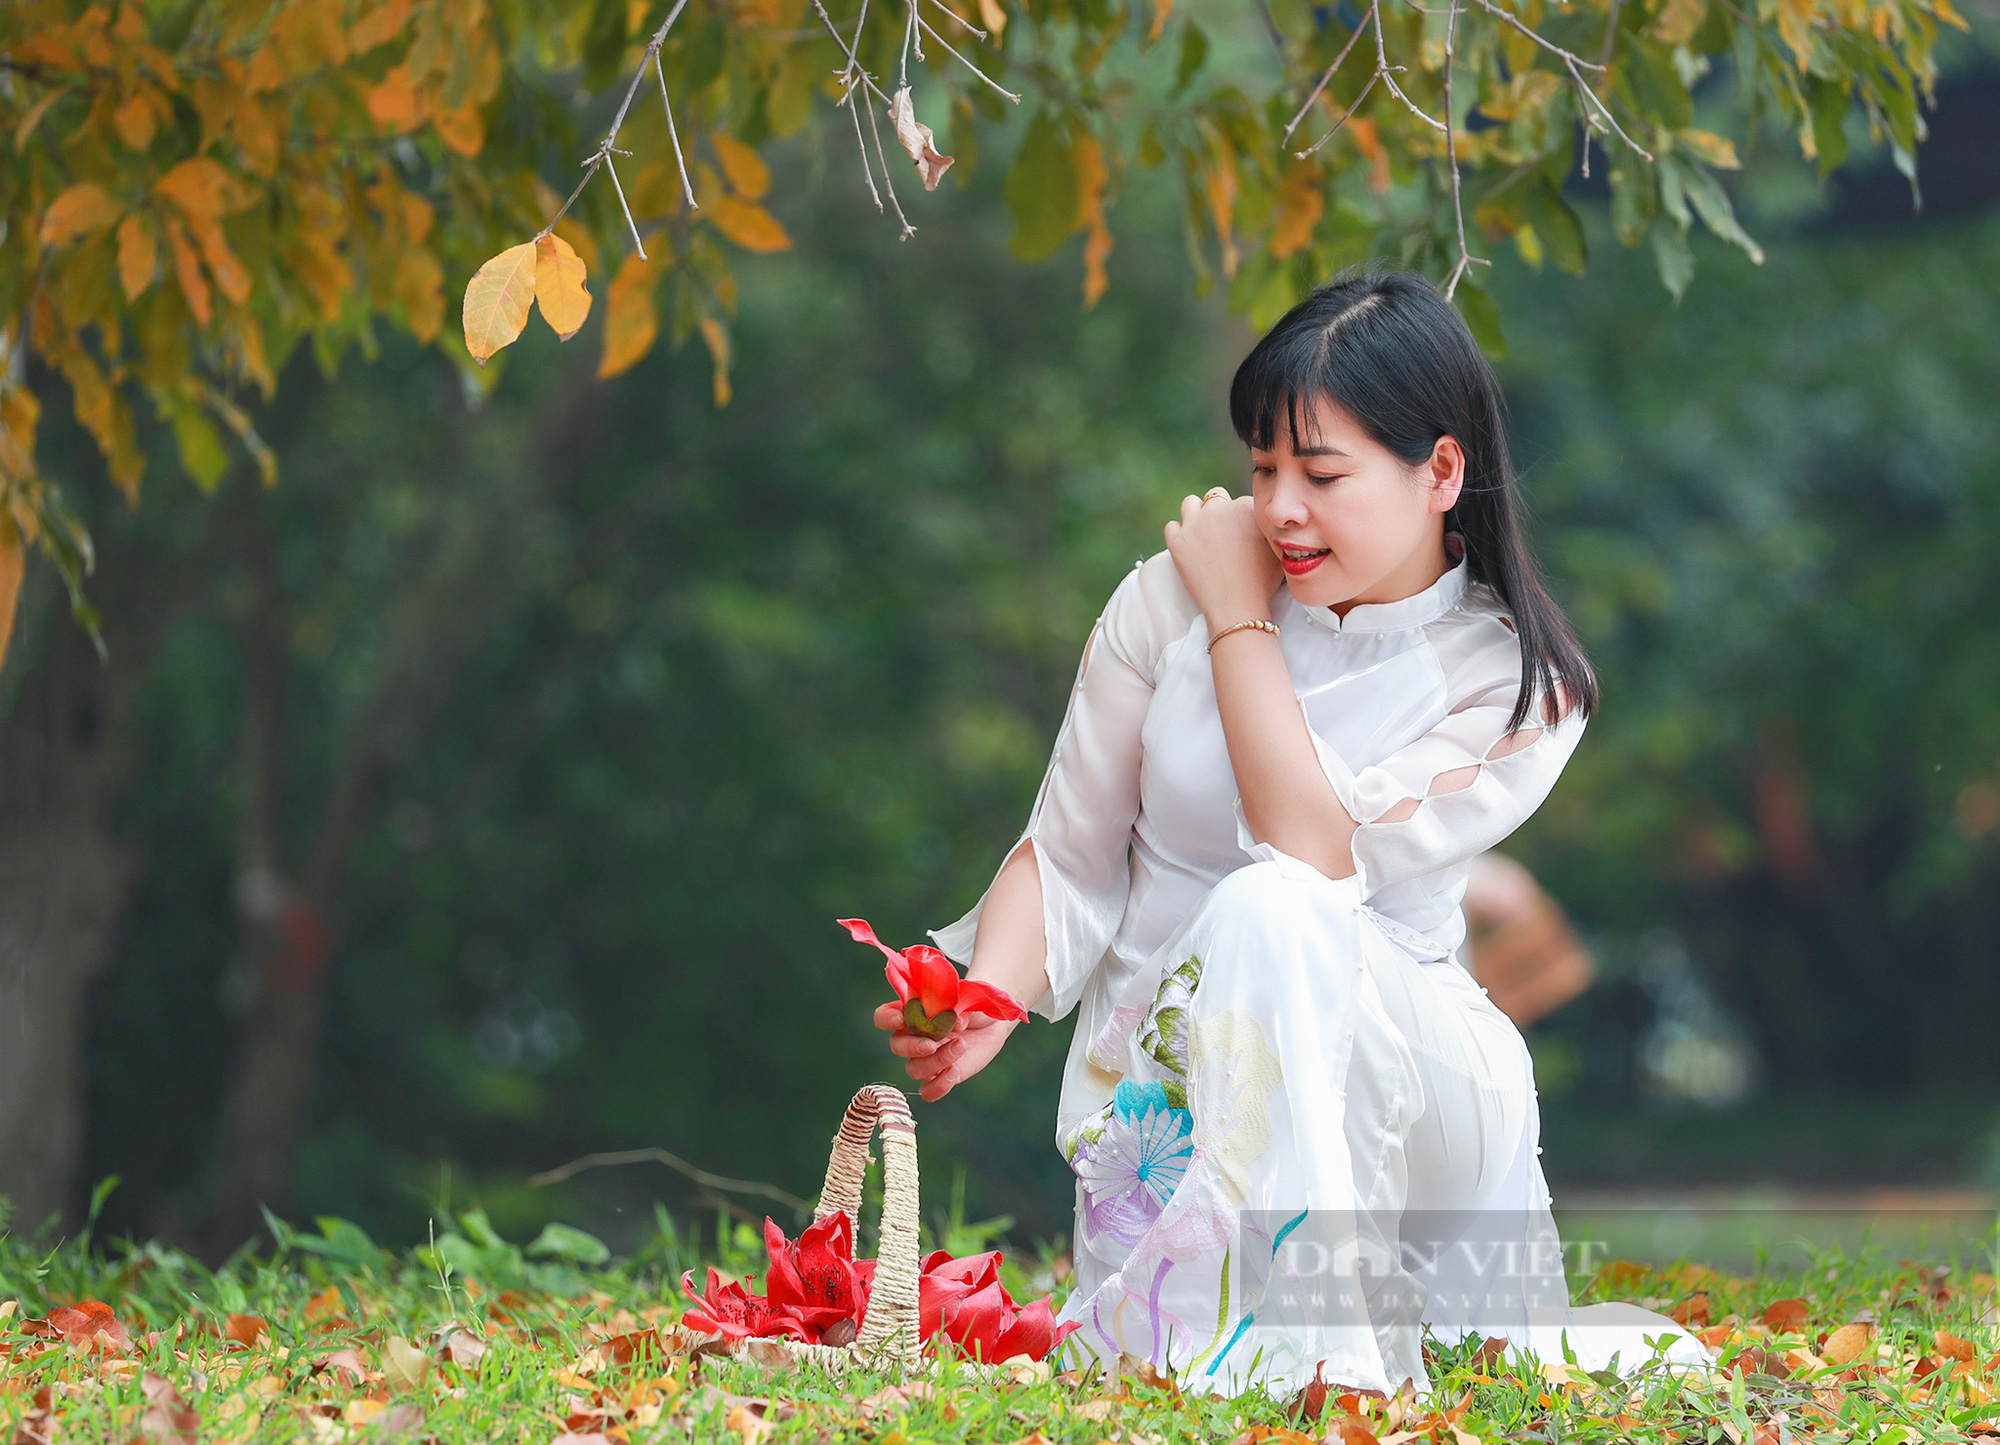 Hoa gạo là biểu tượng đặc trưng của văn hóa cưới hỏi Việt Nam, mang trong mình ý nghĩa may mắn và tình yêu thương. Hãy cùng thưởng thức những hình ảnh rực rỡ, tươi vui và đầy ý nghĩa của những bó hoa gạo tuyệt đẹp nhất.